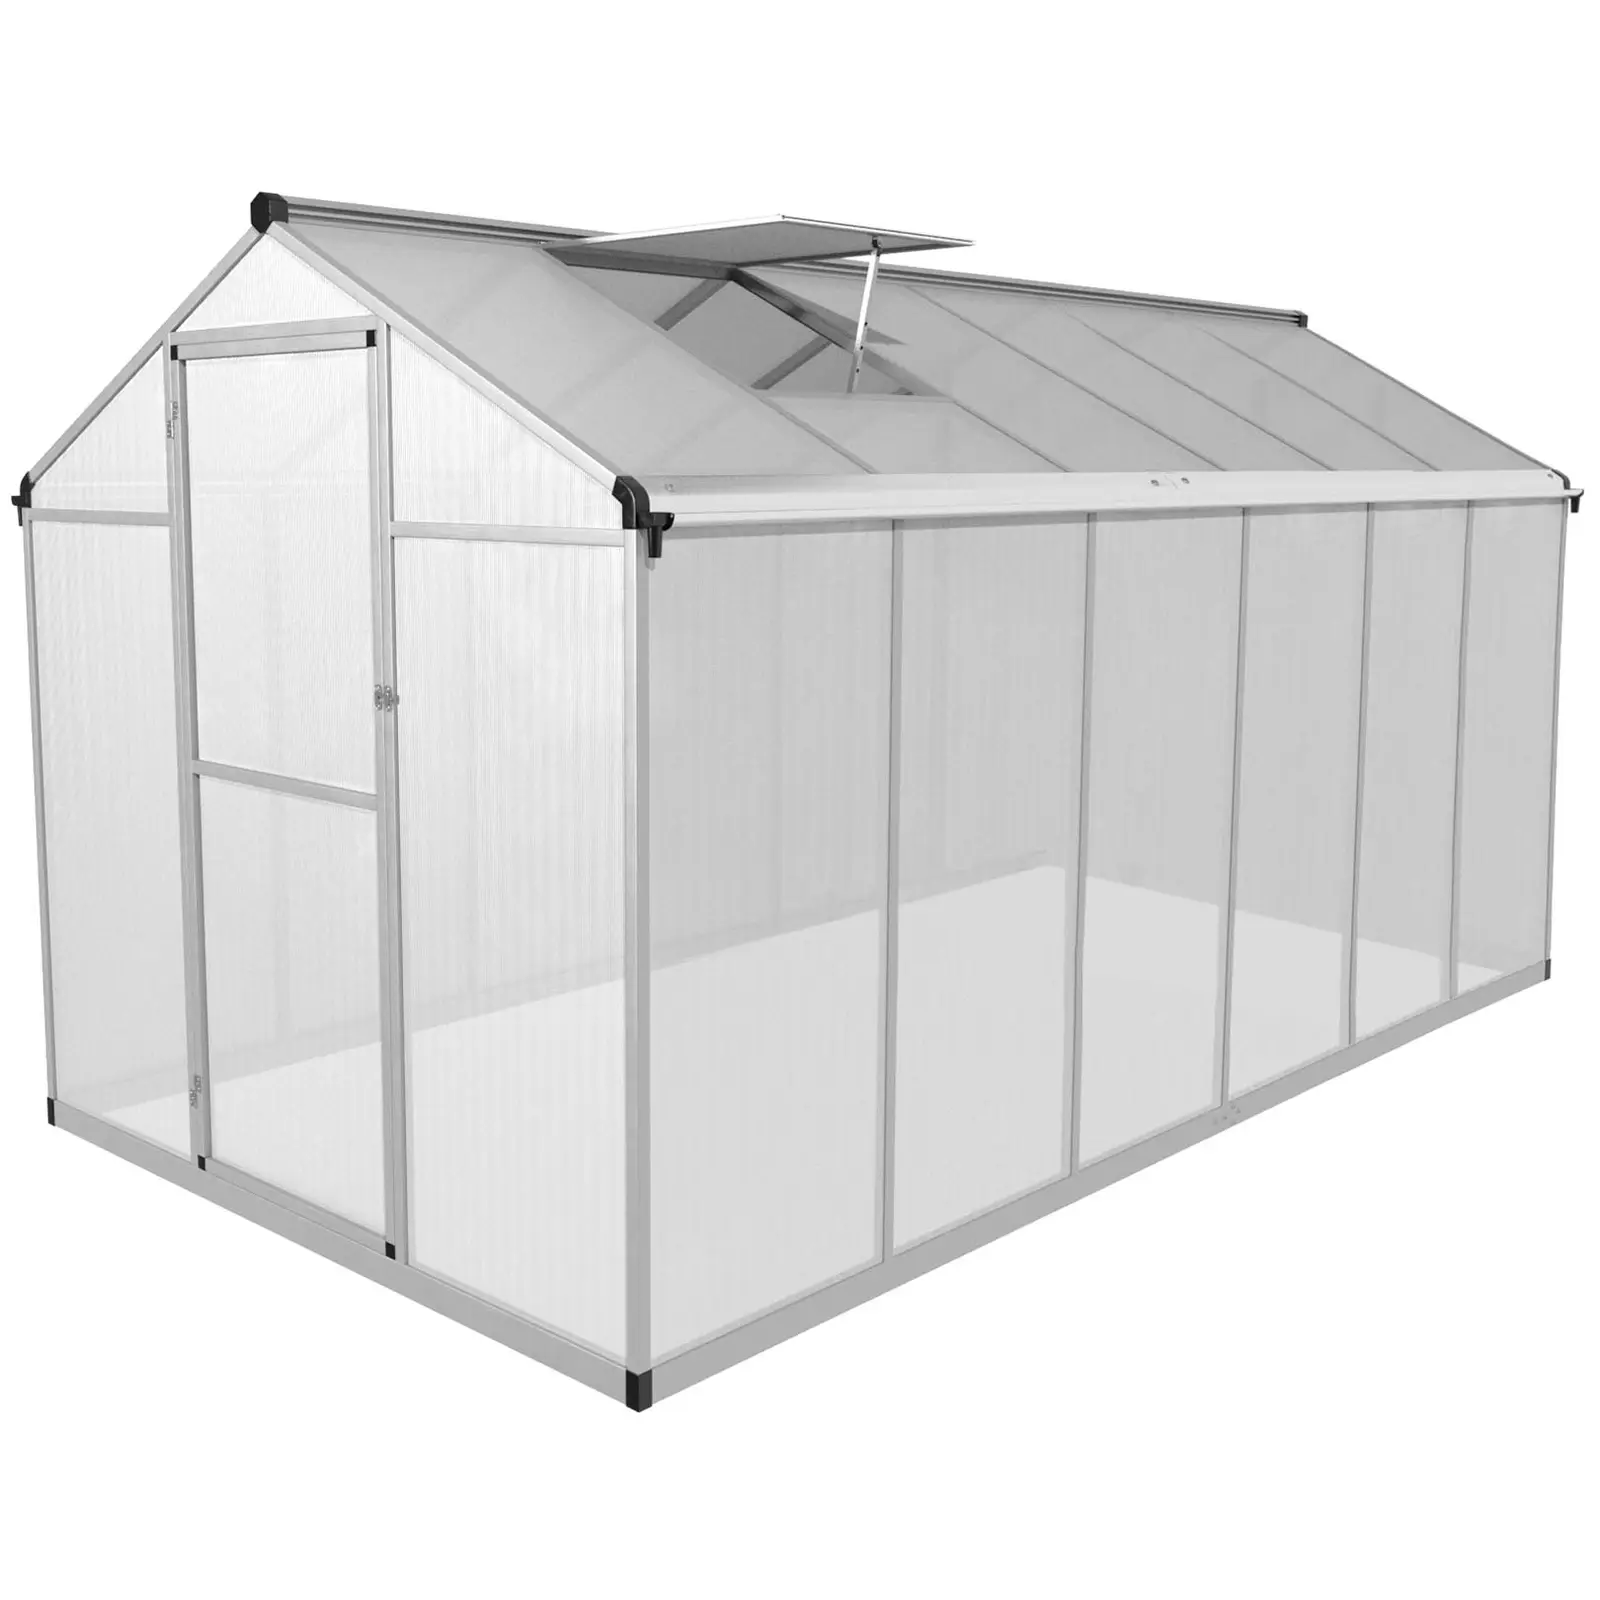 Greenhouse - 361 x 178 x 195 cm - polycarbonate + aluminium